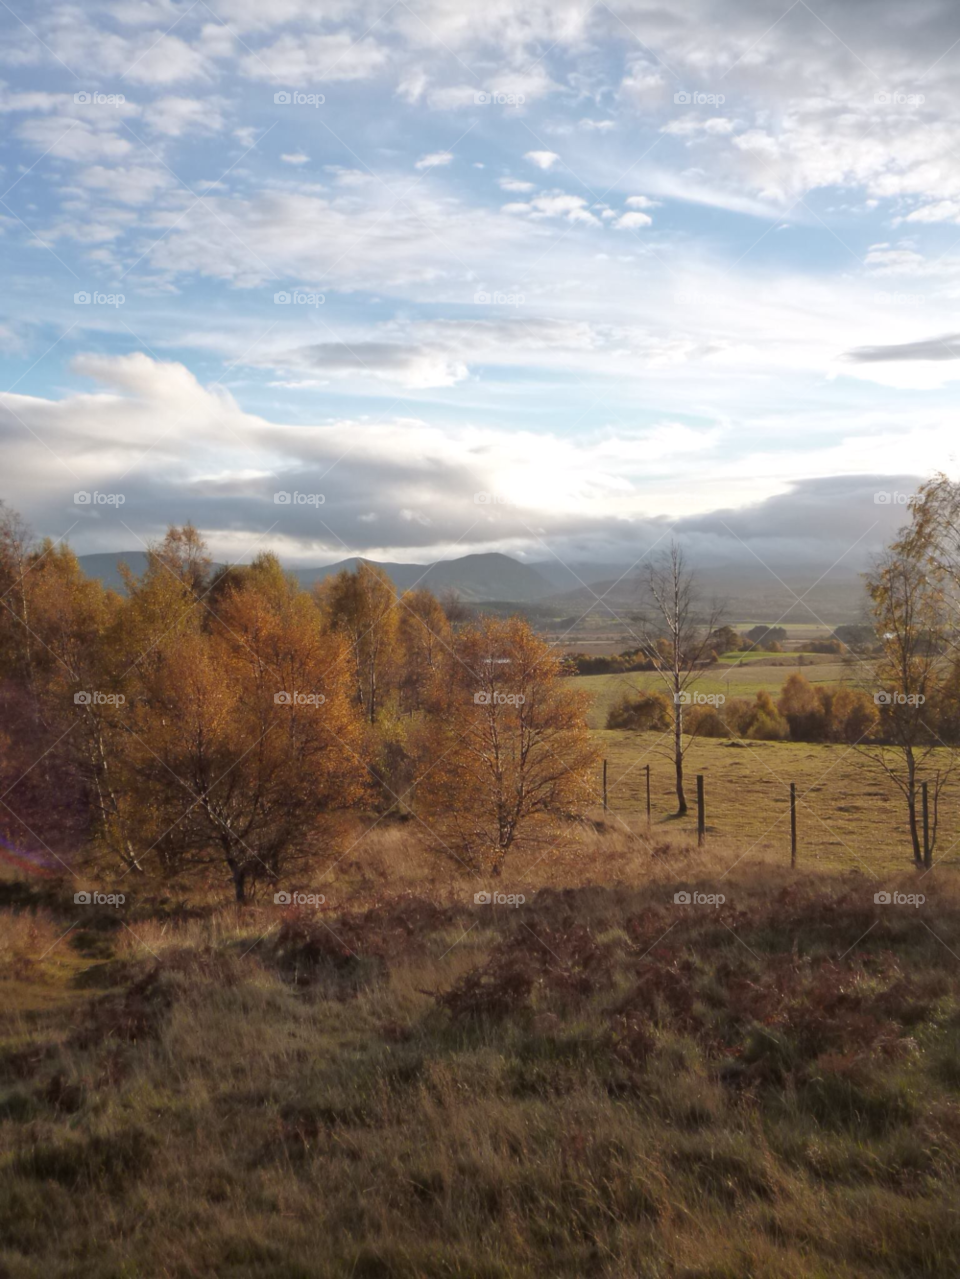 scotland landscape autumn distance by Forest1213